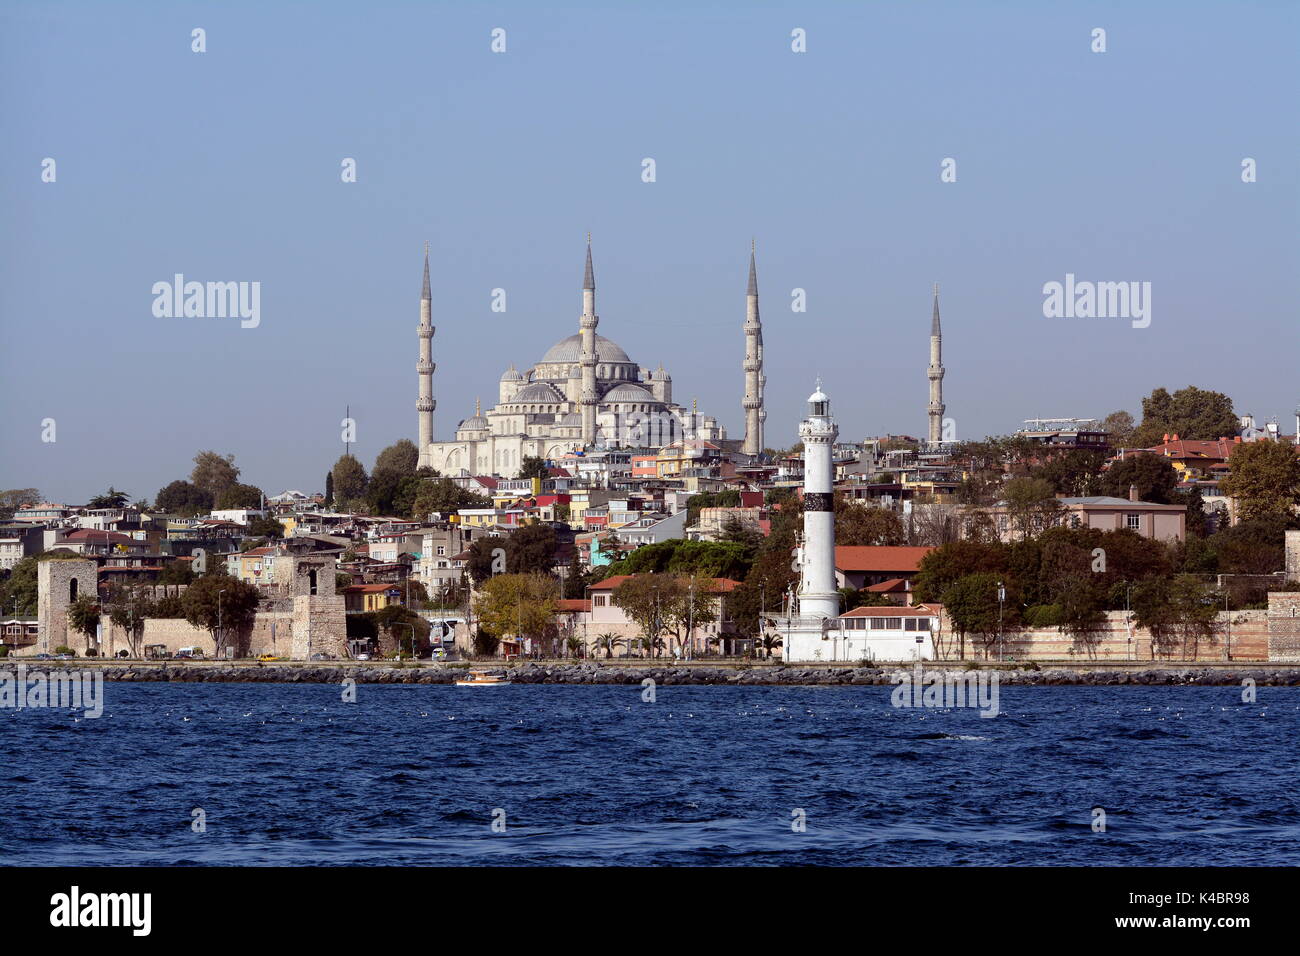 Vista desde el mar de Marmara ver la Mezquita del Sultan Ahmed Foto de stock